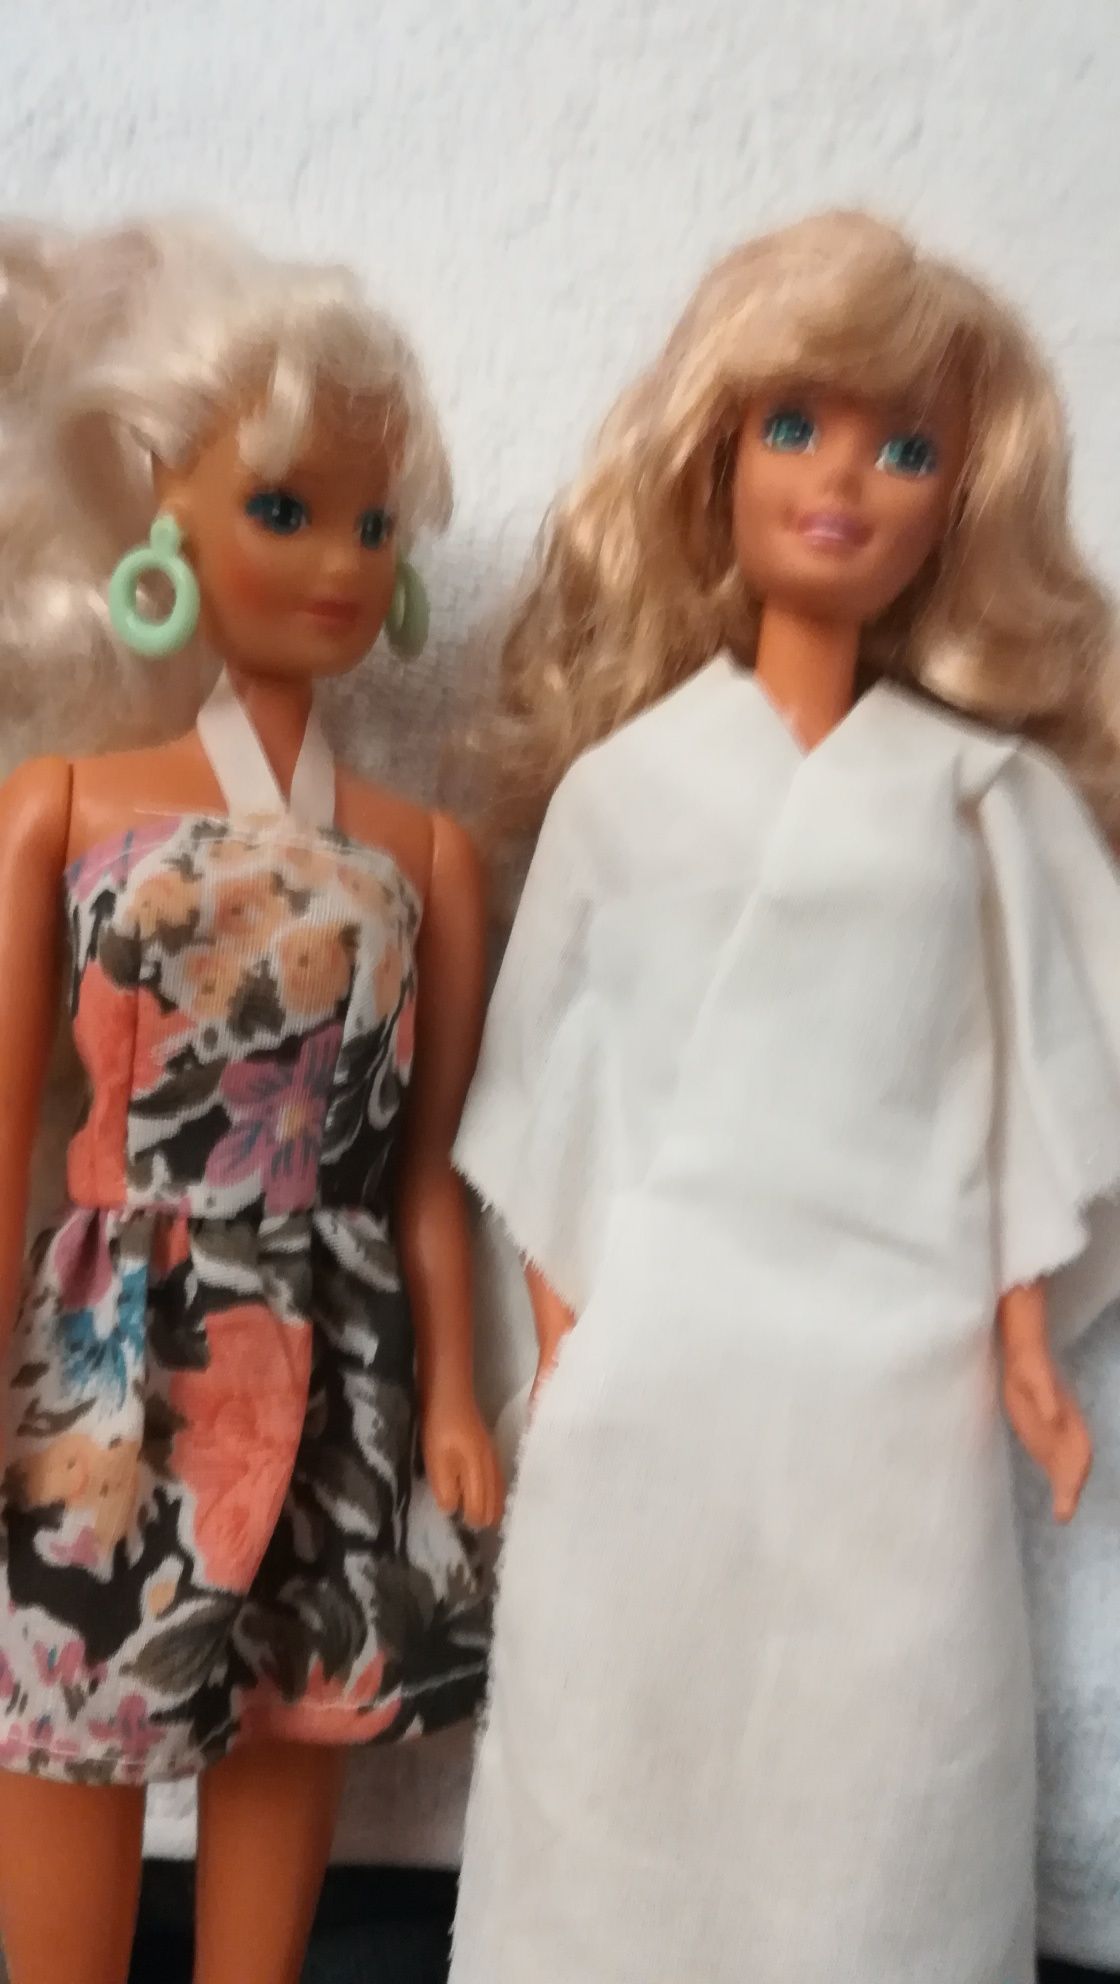 Păpuși Barbie de colectie